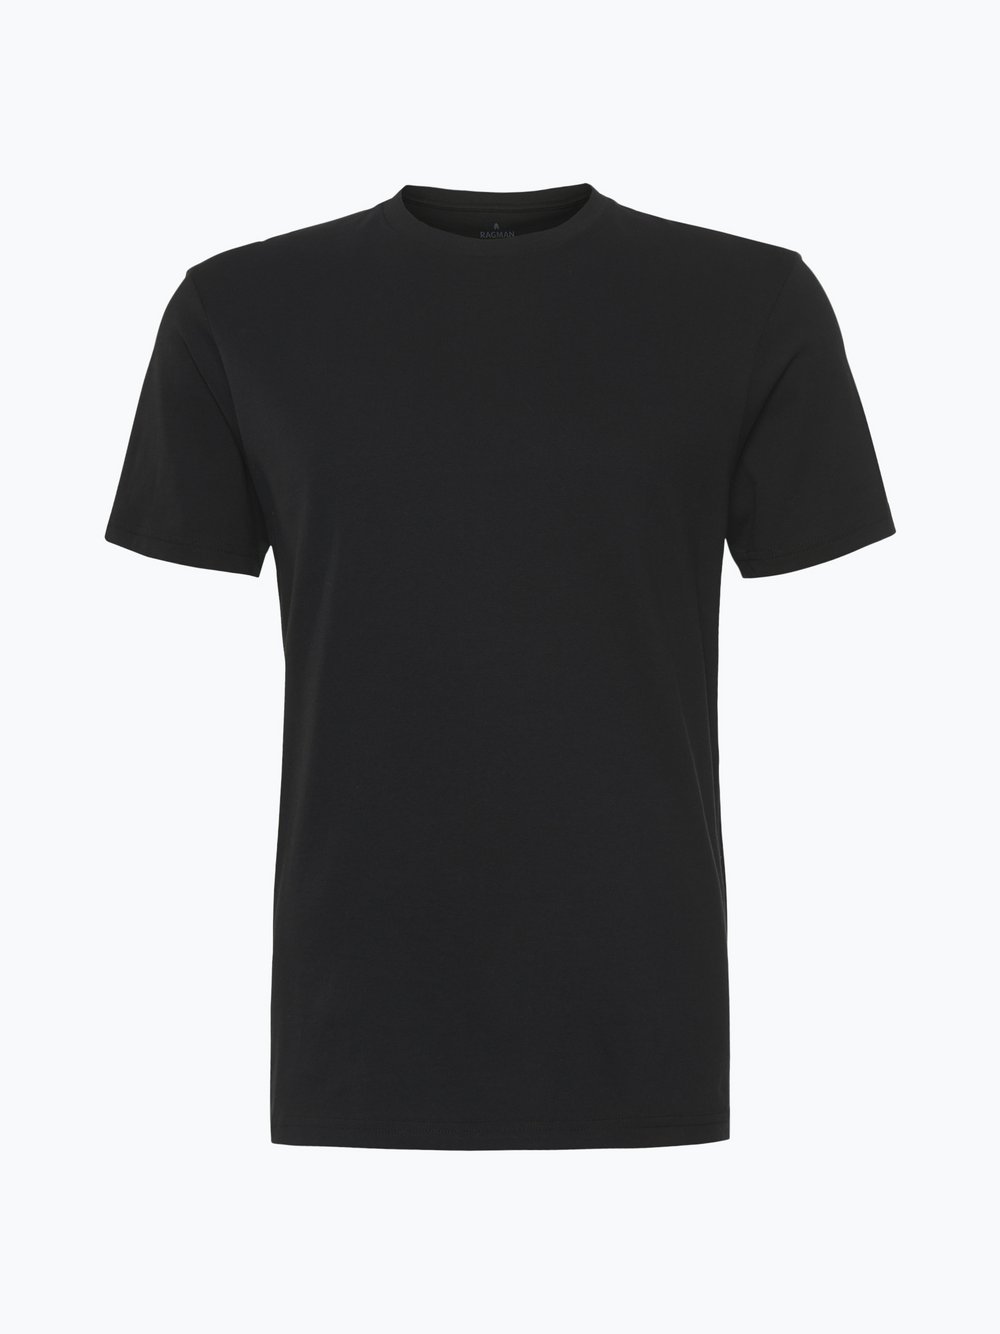 Ragman - T-shirty męskie pakowane po 2 szt., czarny